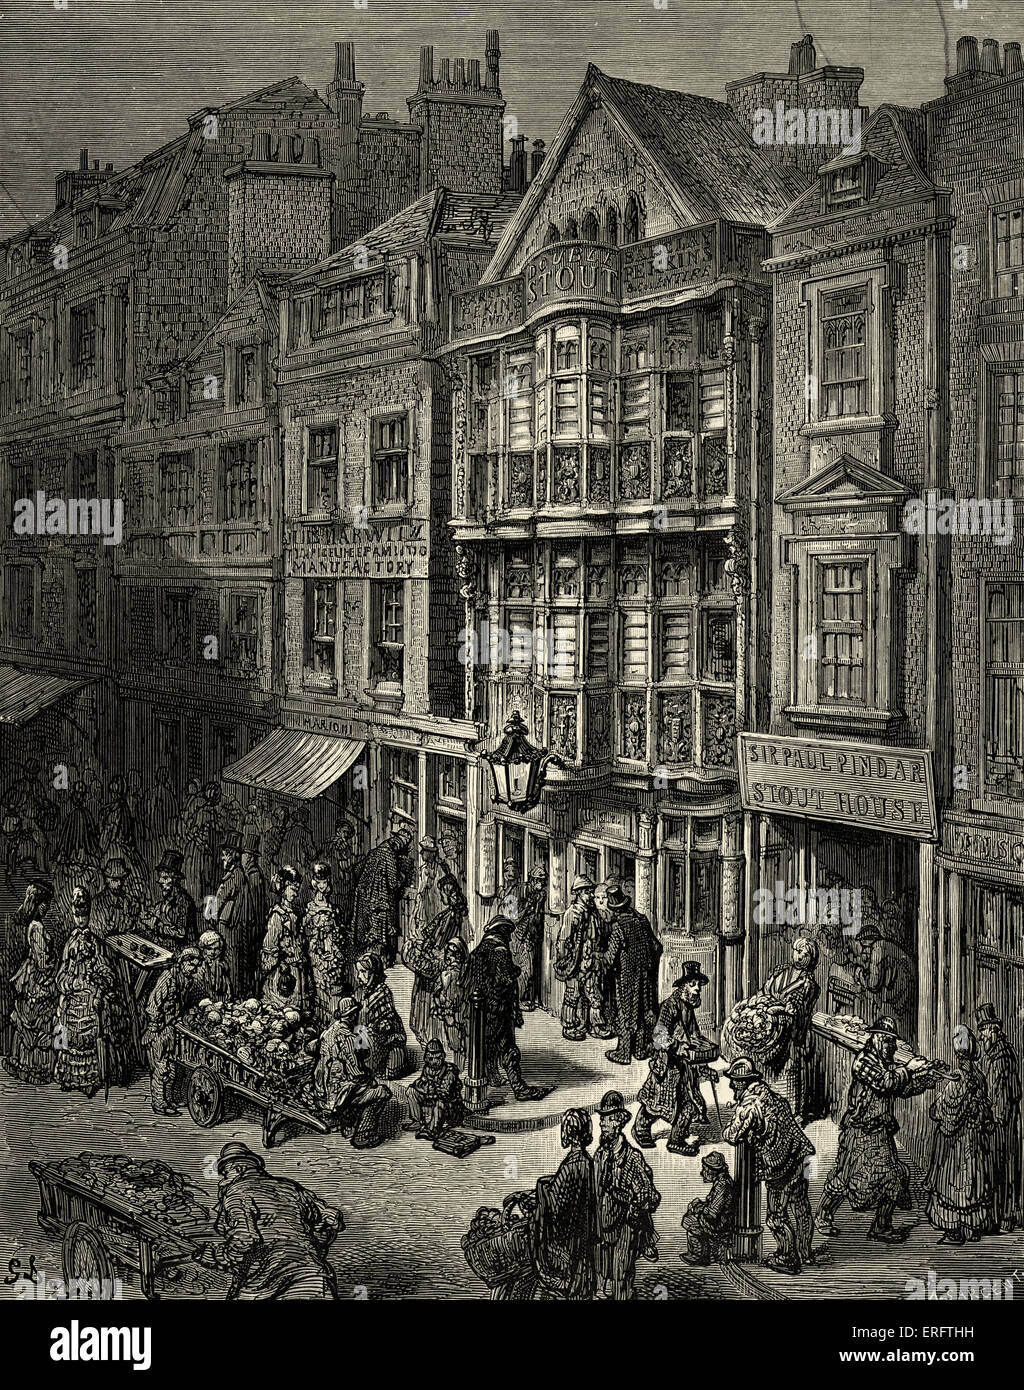 Das viktorianische London - Bishopsgate Street. Östlich von London. Jüdisches Viertel. Gravur von Gustave Doré aus "London, eine Wallfahrt von Gustave Doré und Blanchard Jerrold", 1872. Stockfoto